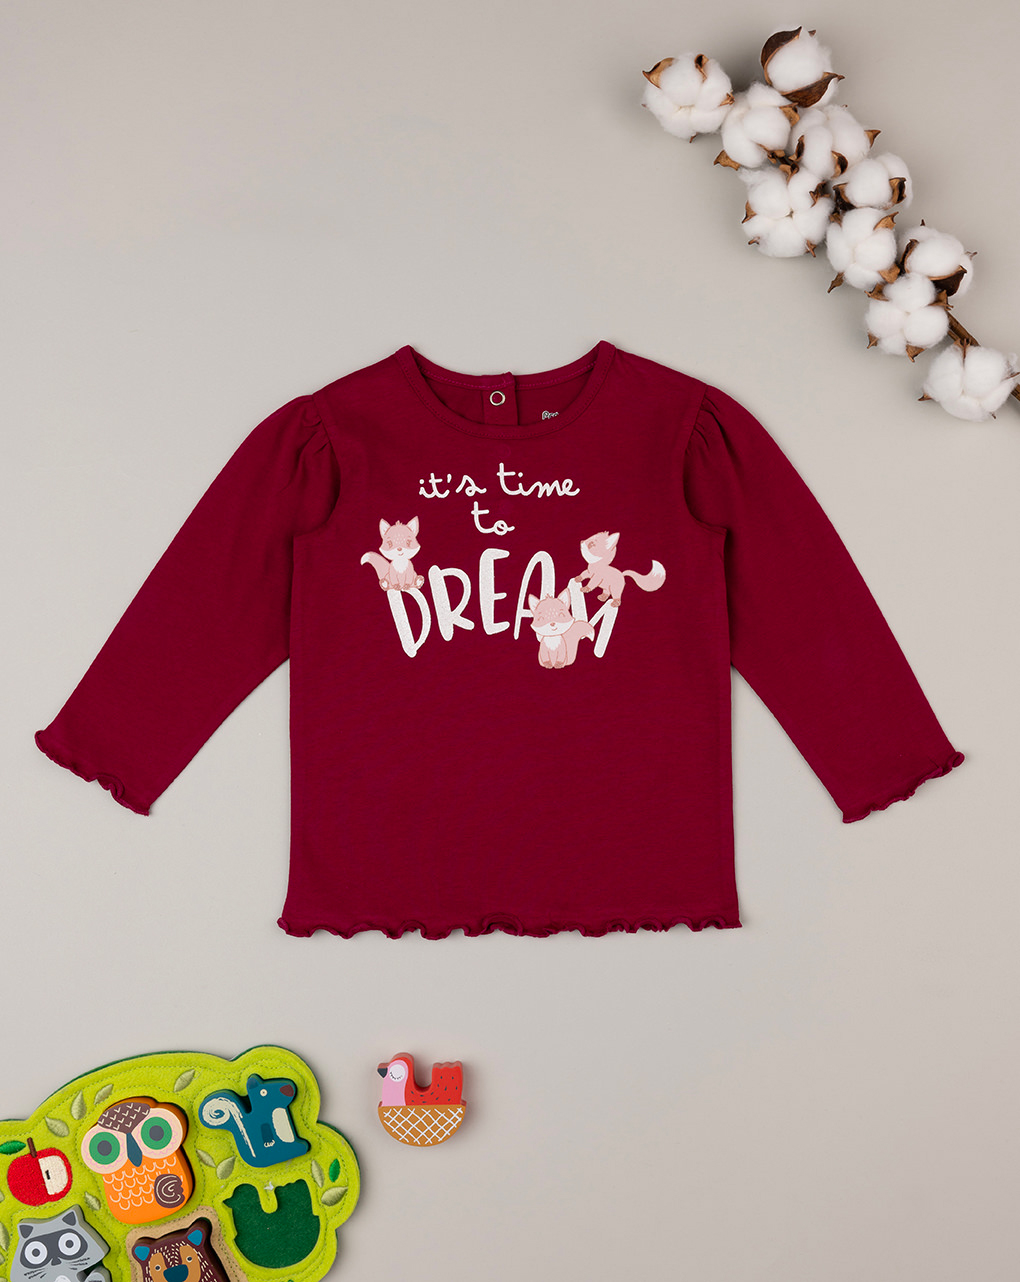 βρεφική μπλούζα μπορντώ dream για κορίτσι - Prénatal